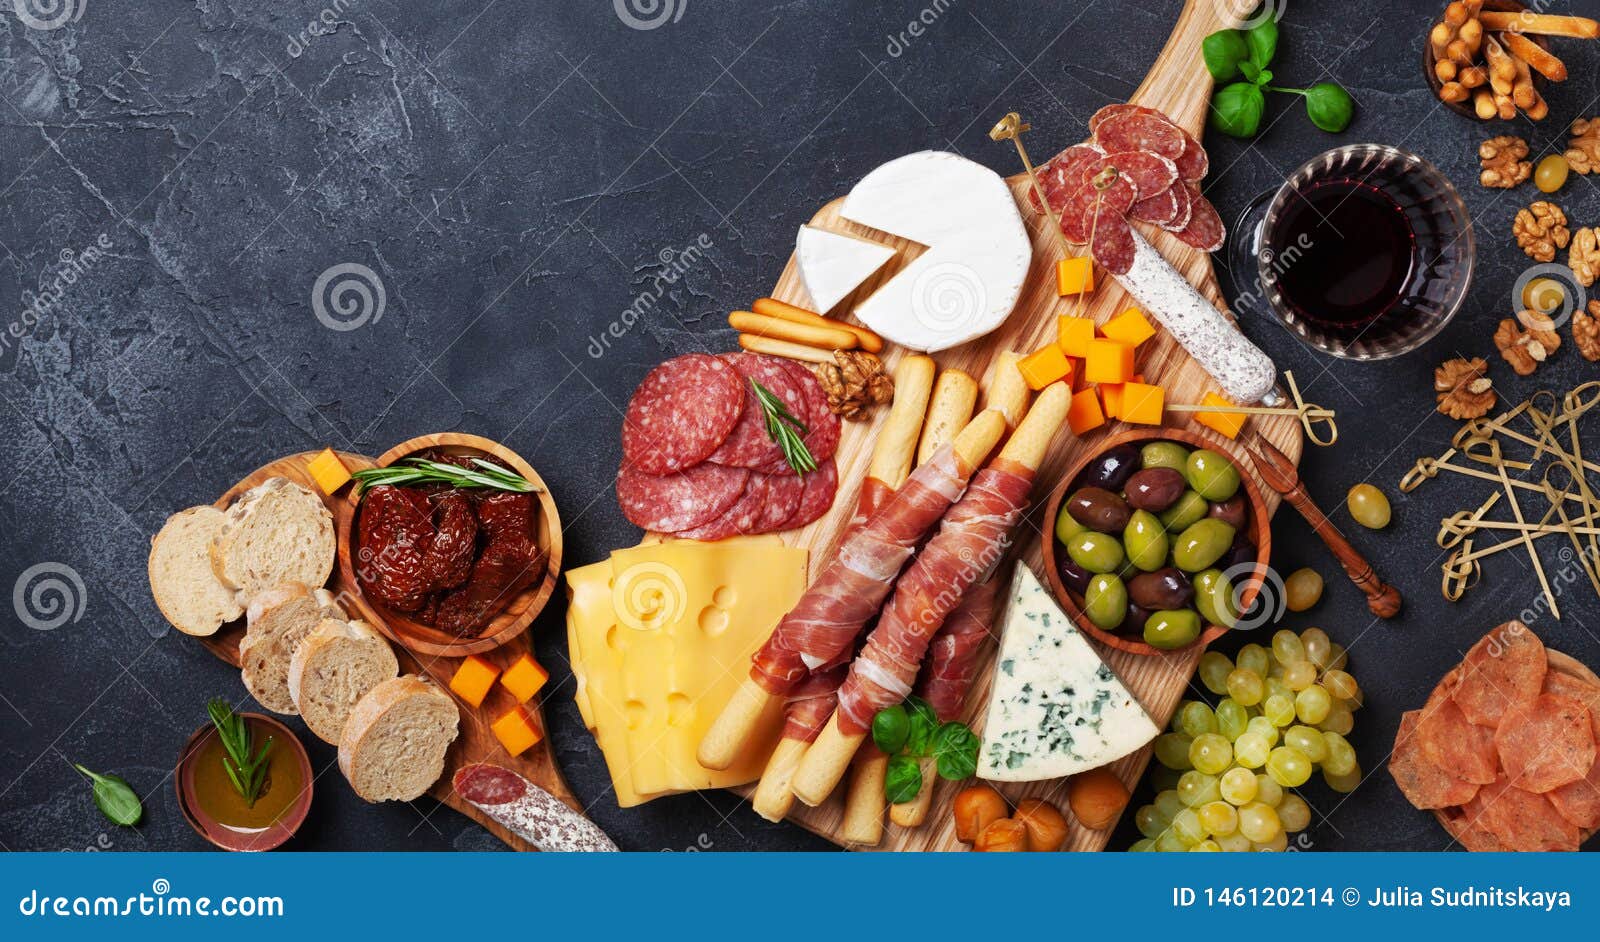 Italienische Aperitifs oder Antipastosatz mit Delikatesse auf schwarzer Tischplatteansicht Delikatessen von Käse- und Fleischimbi